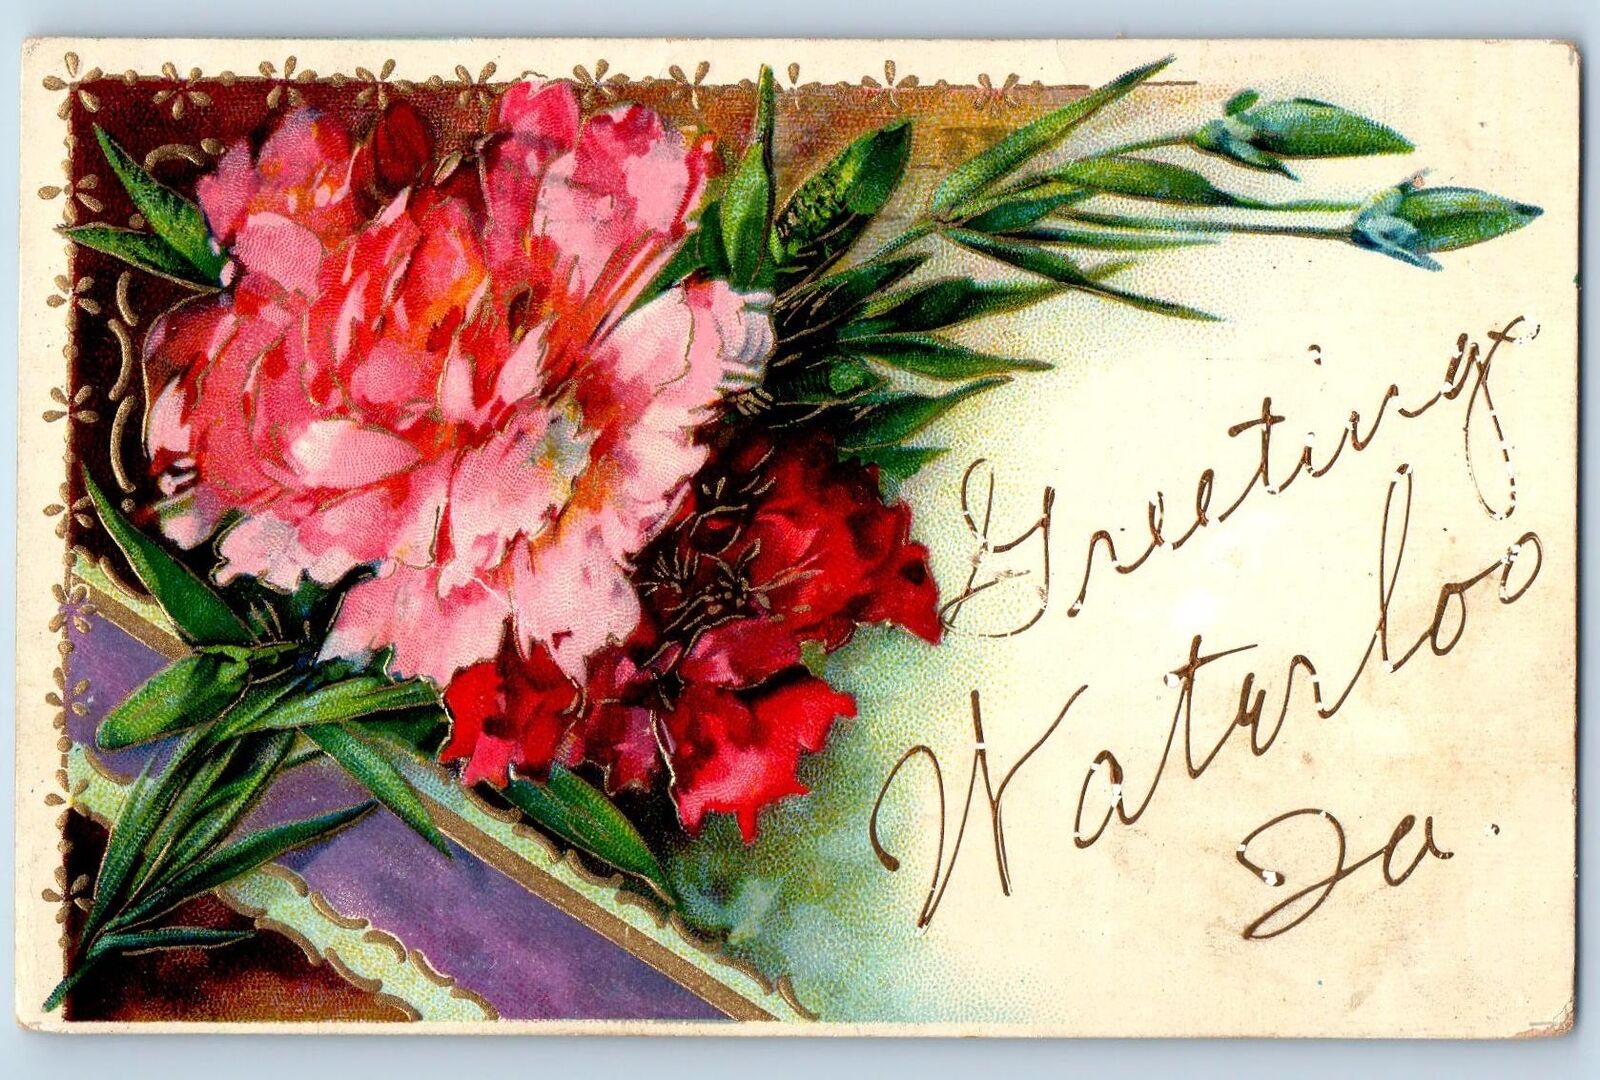 Waterloo Iowa IA Postcard Greetings Embossed Flowers And Leaves 1909 Antique